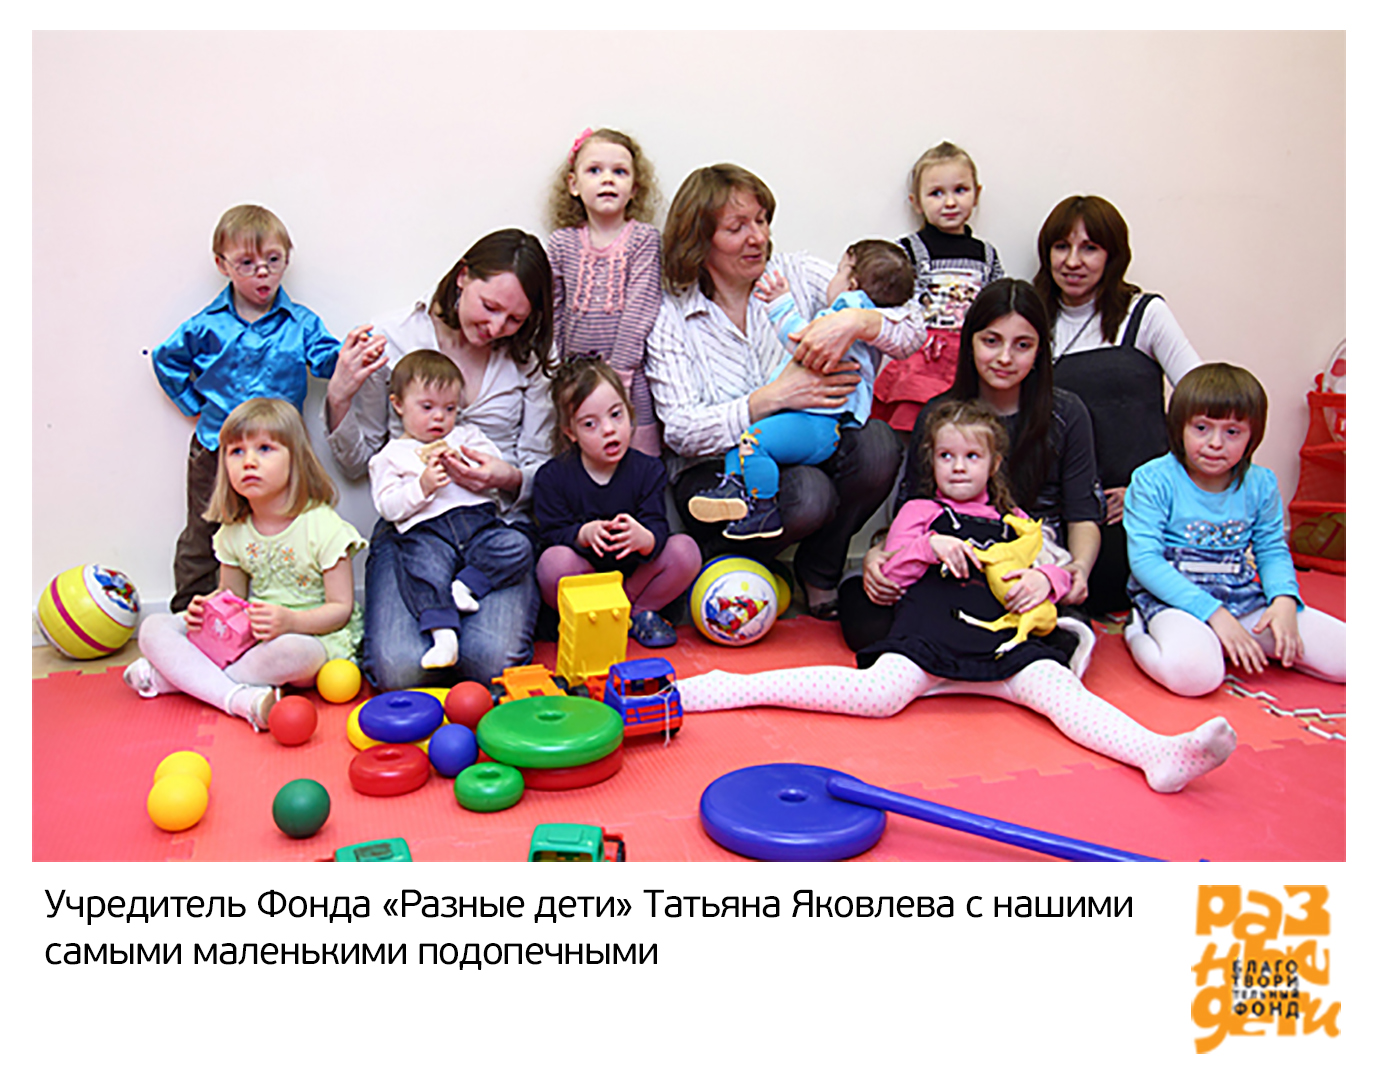 Учредитель Фонда Татьяна Яковлева с нашими самыми маленькими подопечными